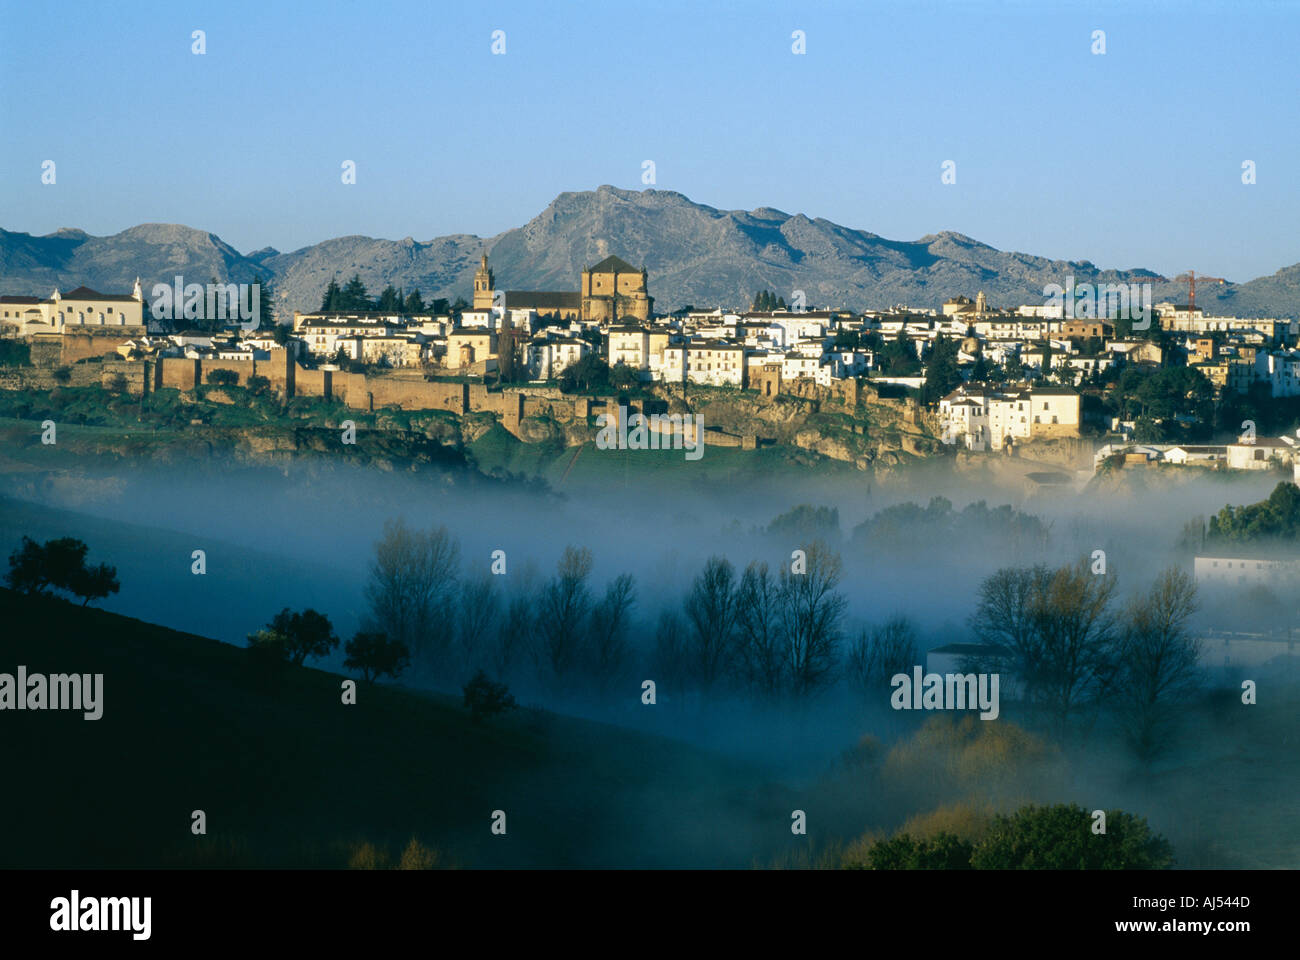 Historische Stadt Ronda in der Provinz Malaga Andalusien-Spanien-Tal mit frühen Morgennebel Landschaft Stockfoto